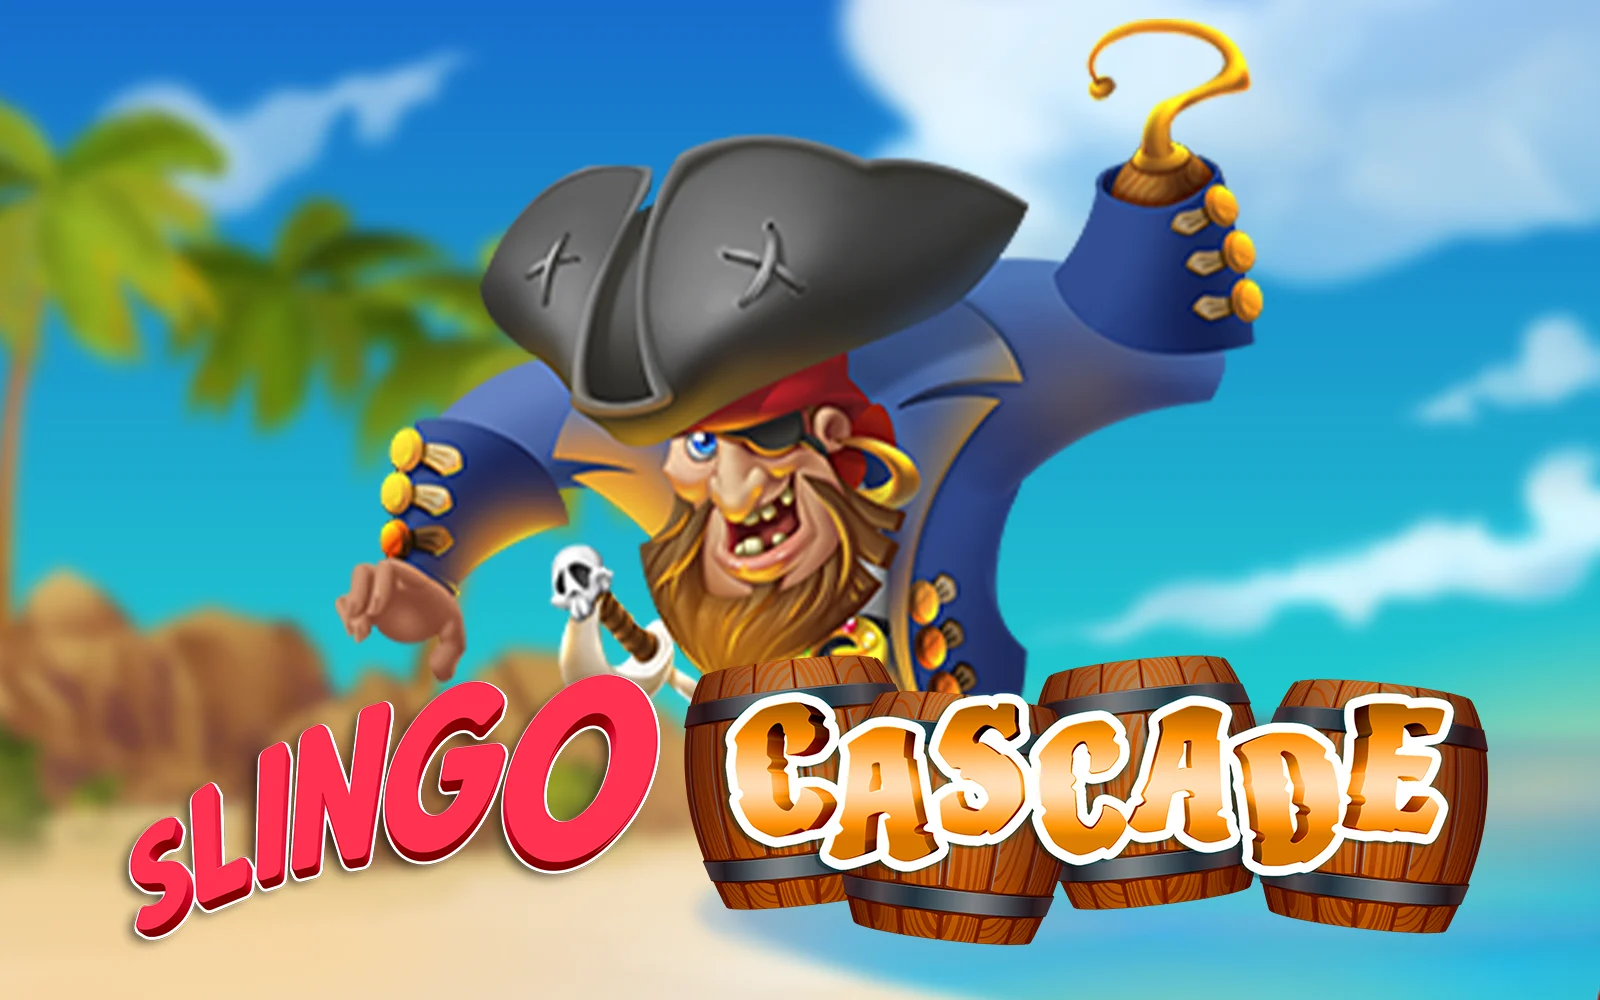 Luaj Slingo Cascade në kazino Starcasino.be në internet